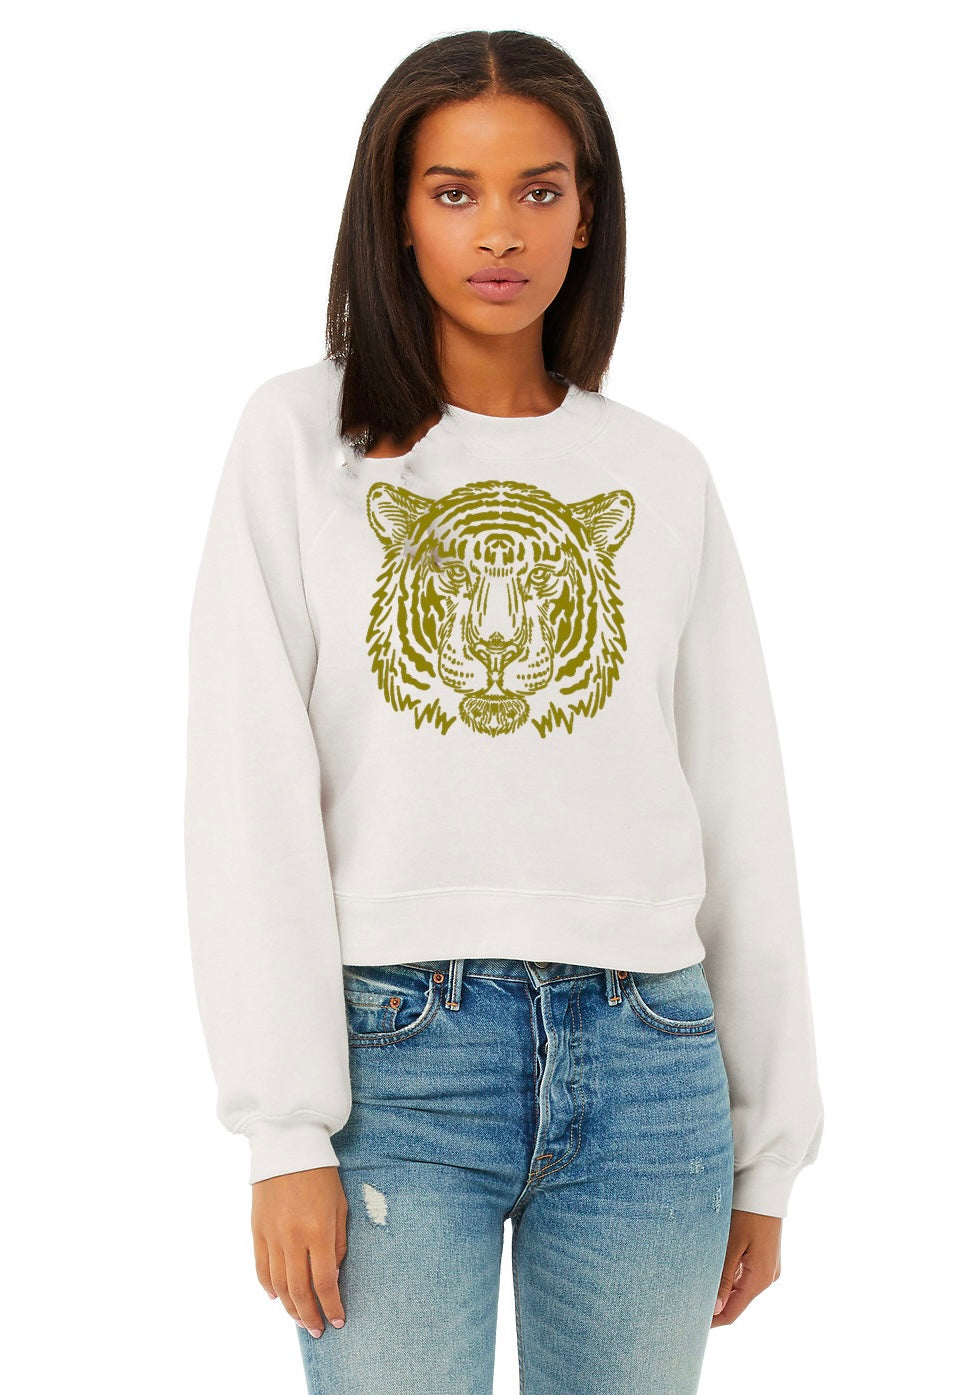 Fierce Tiger Sweatshirt